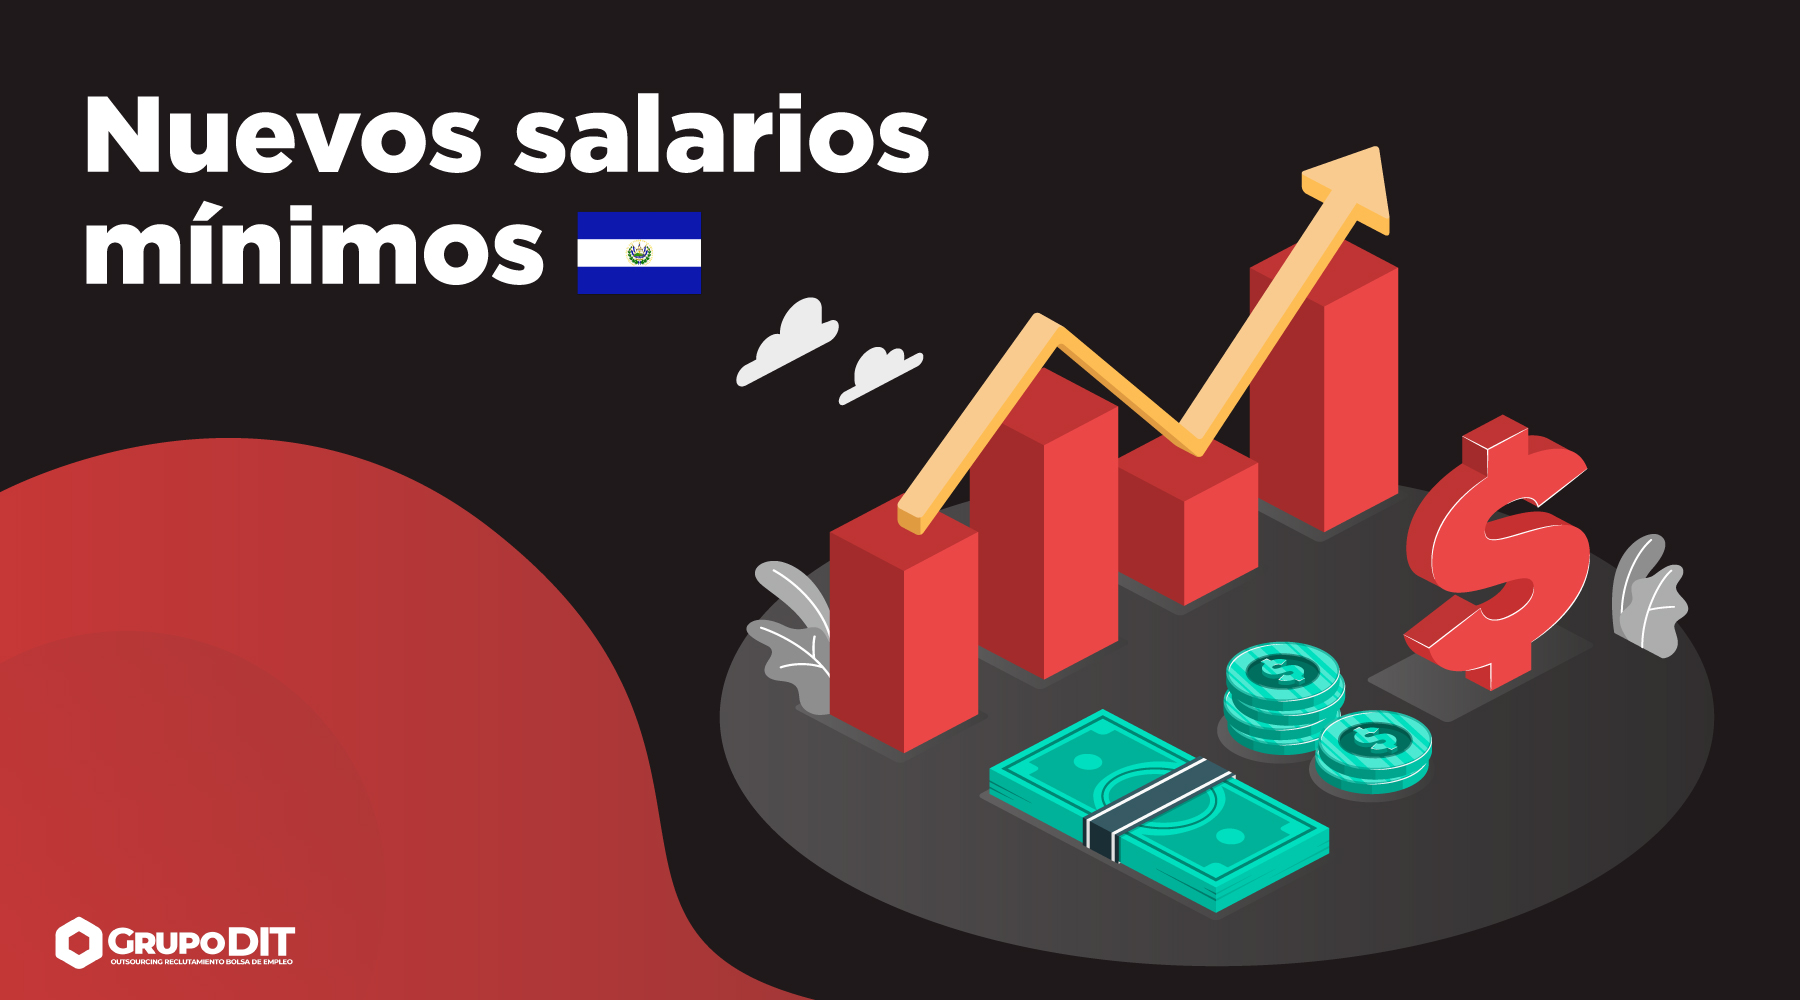 Nuevos salarios mínimos en El Salvador 2021 por Grupo DIT